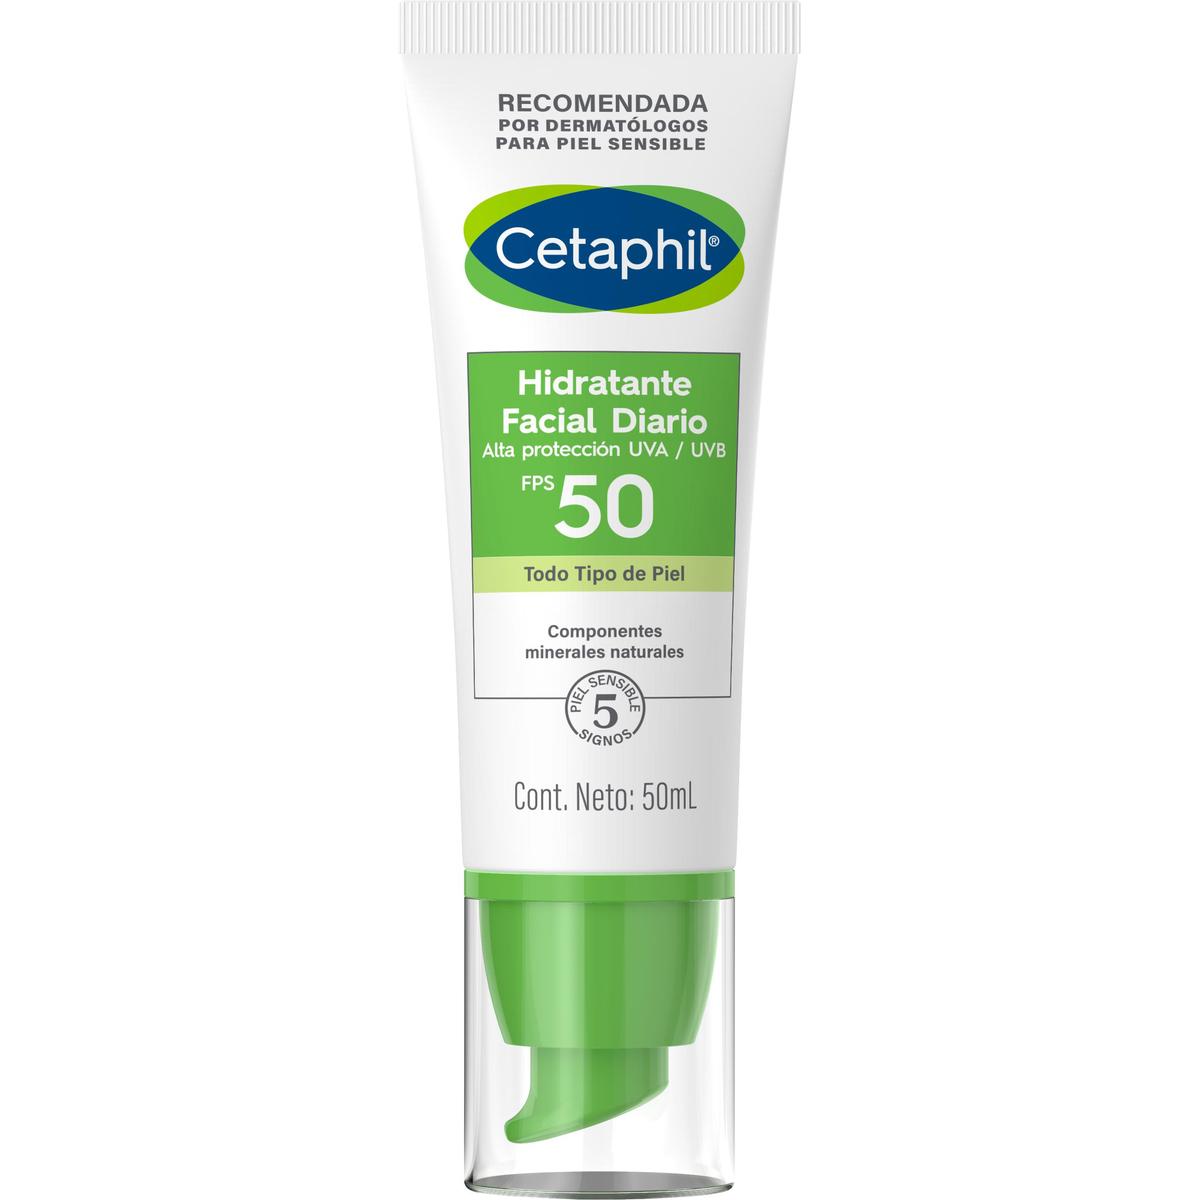 Cetaphil, Hidratante facial diario con FPS50+, 50ml